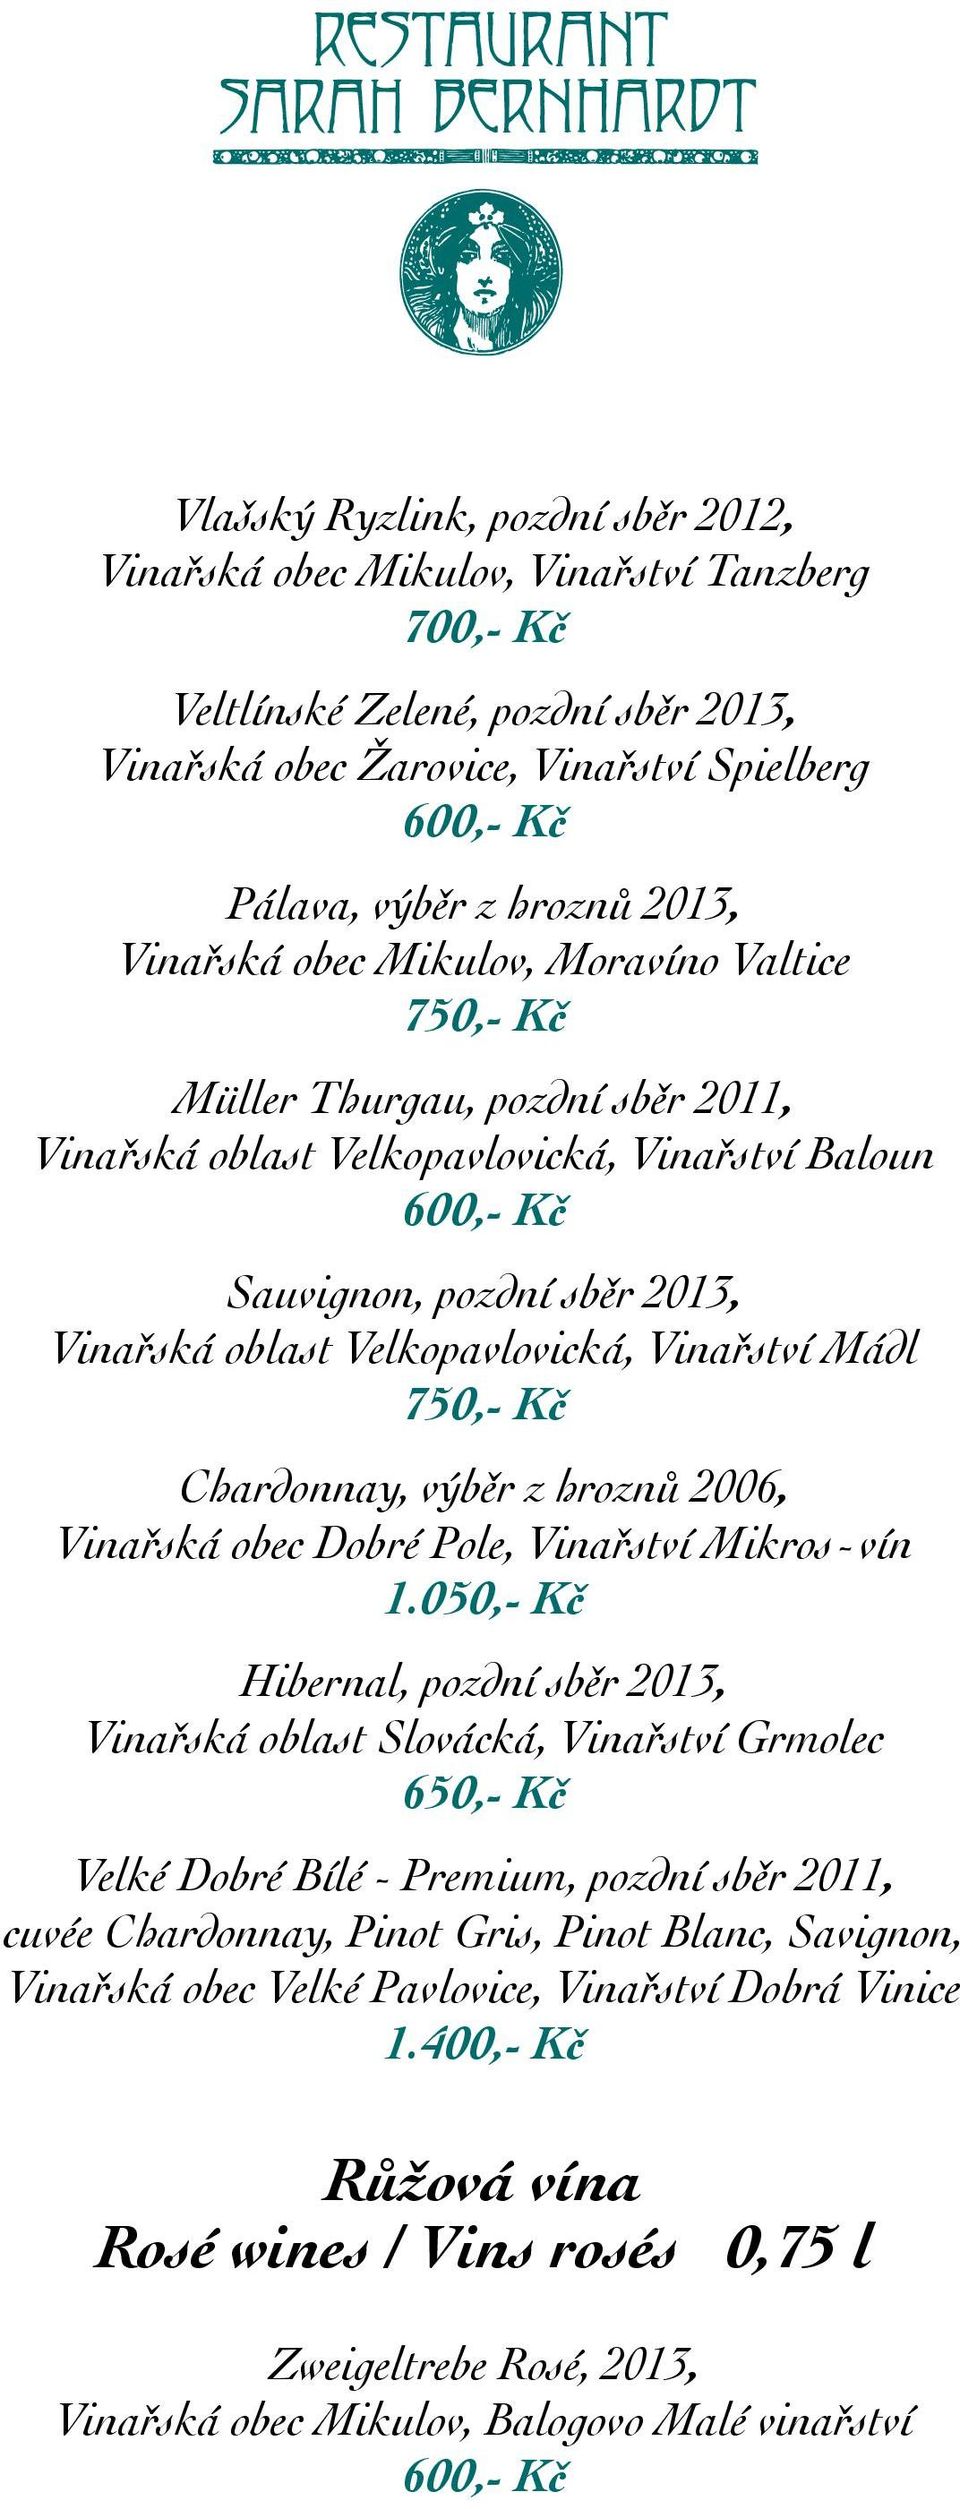 Vinařství Mádl 750,- Kč Chardonnay, výběr z hroznů 2006, Vinařská obec Dobré Pole, Vinařství Mikros-vín 1.